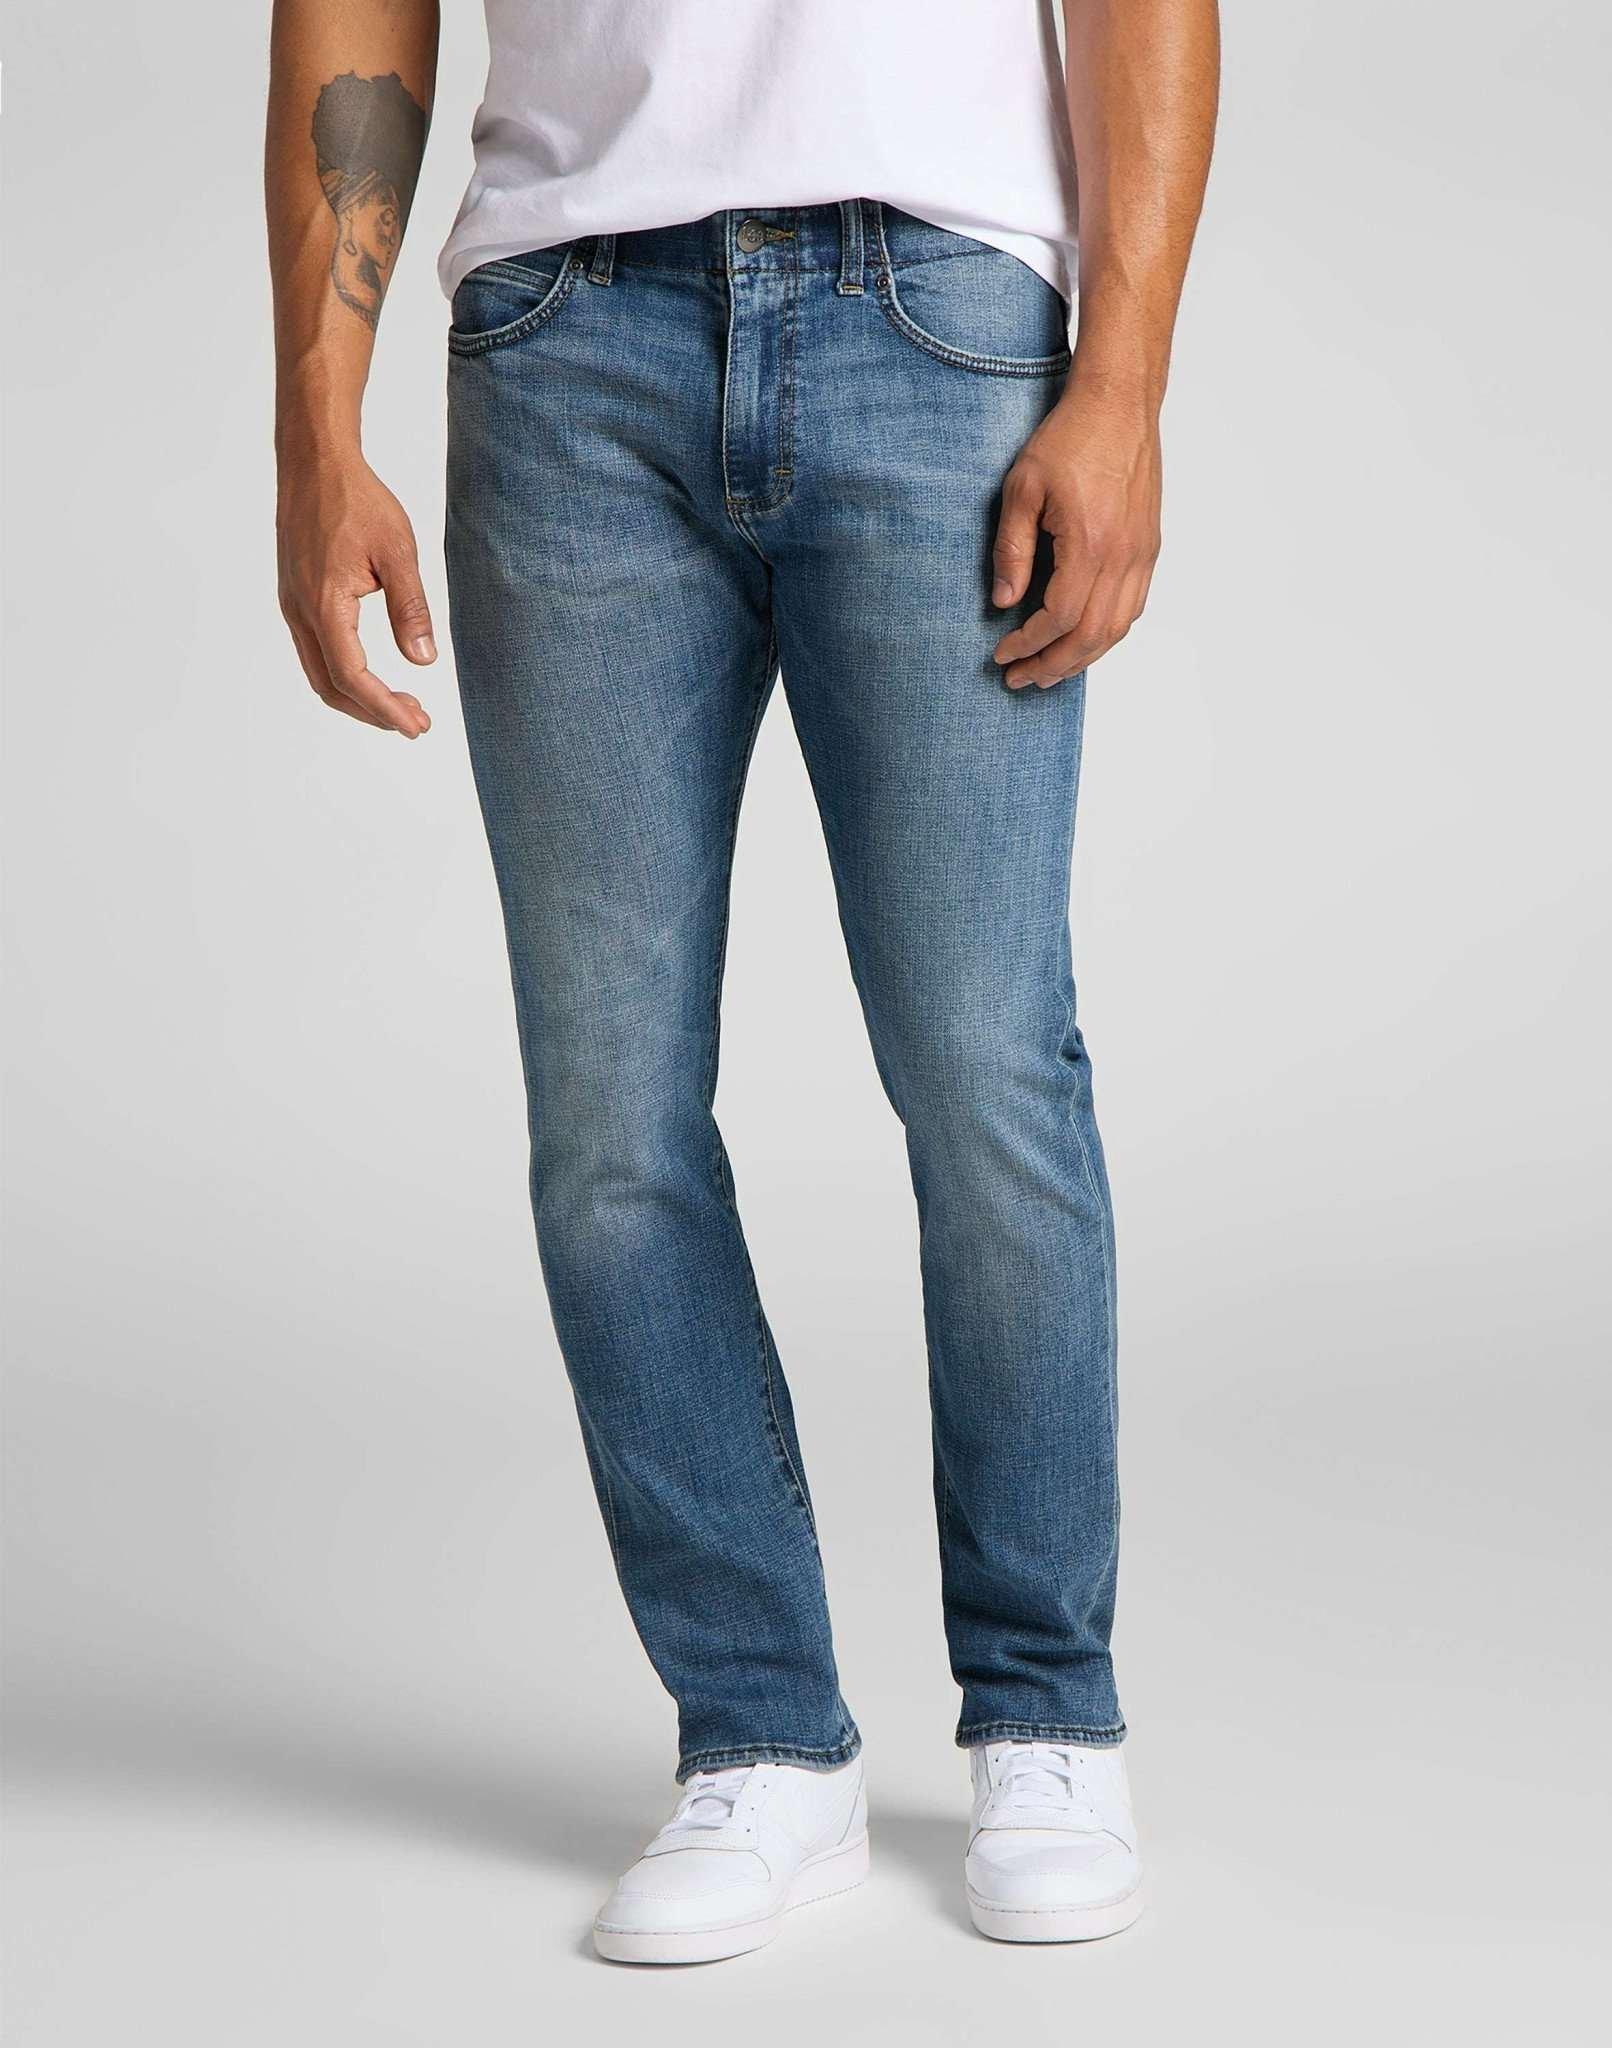 Jeans Slim Fit Mvp Herren Blau Denim L32/W42 von Lee